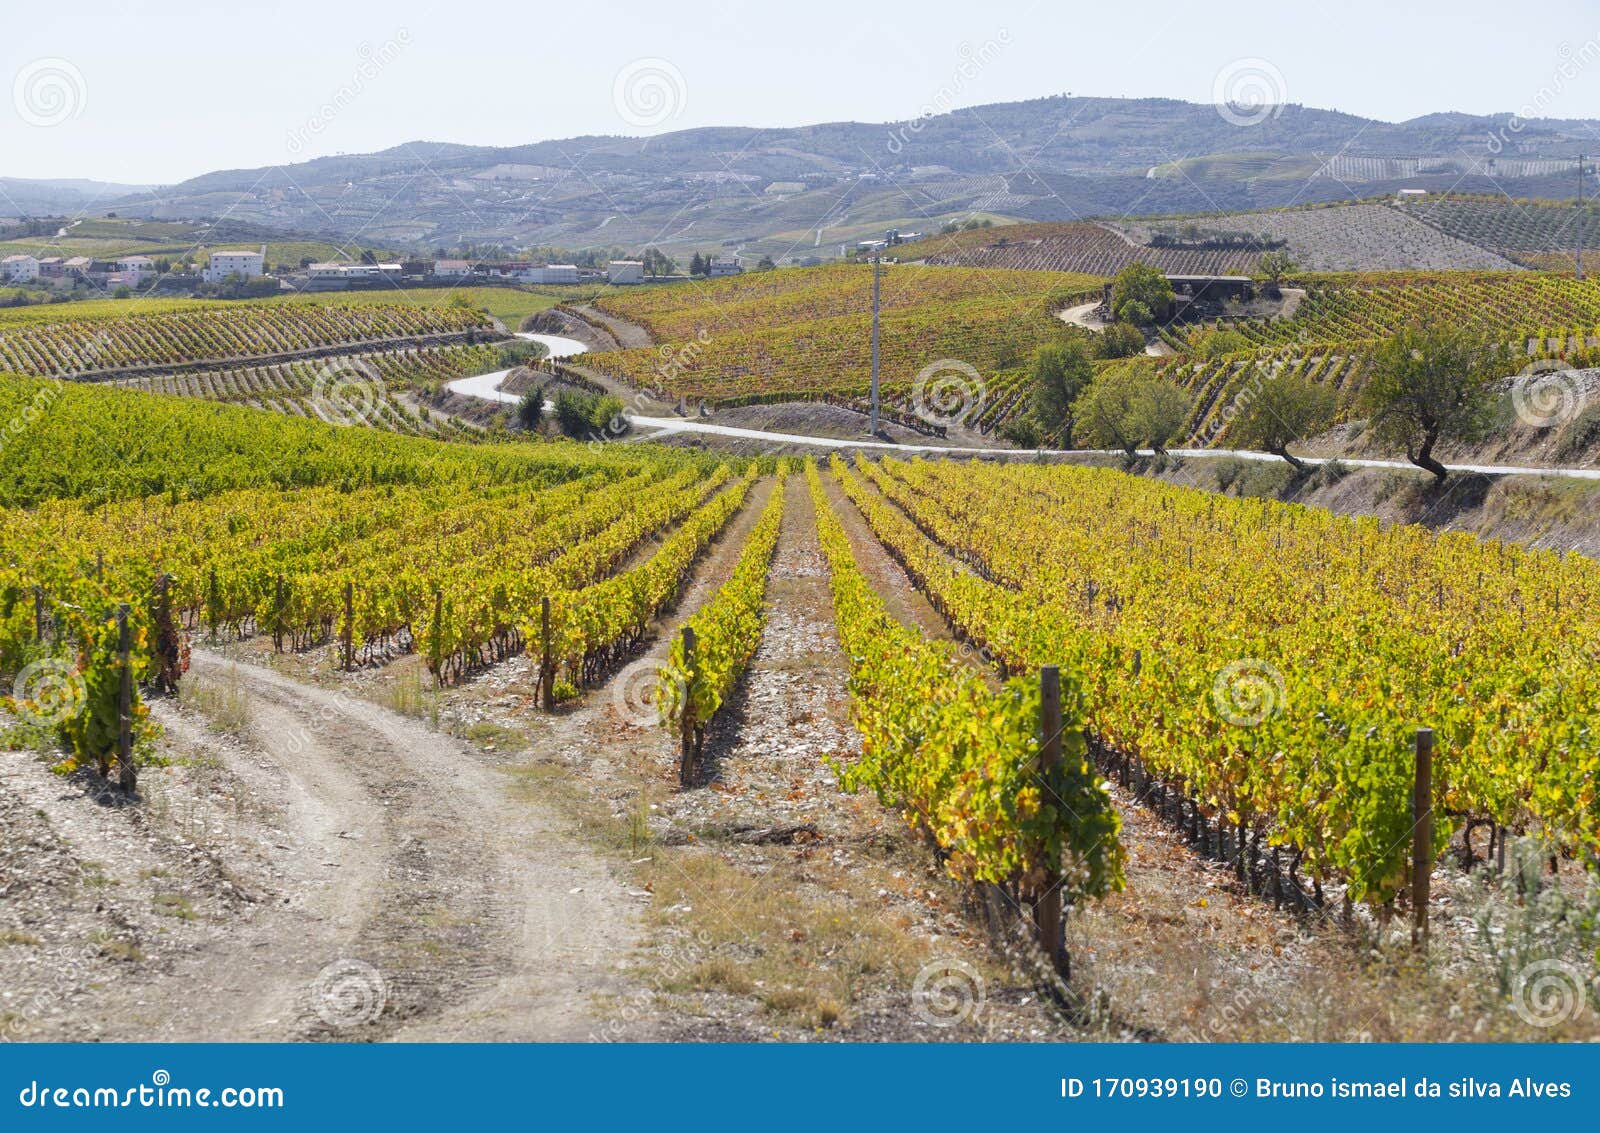 unesco world heritage, the beautiful endless lines of douro valley vineyards, in vila nova de foz coa.